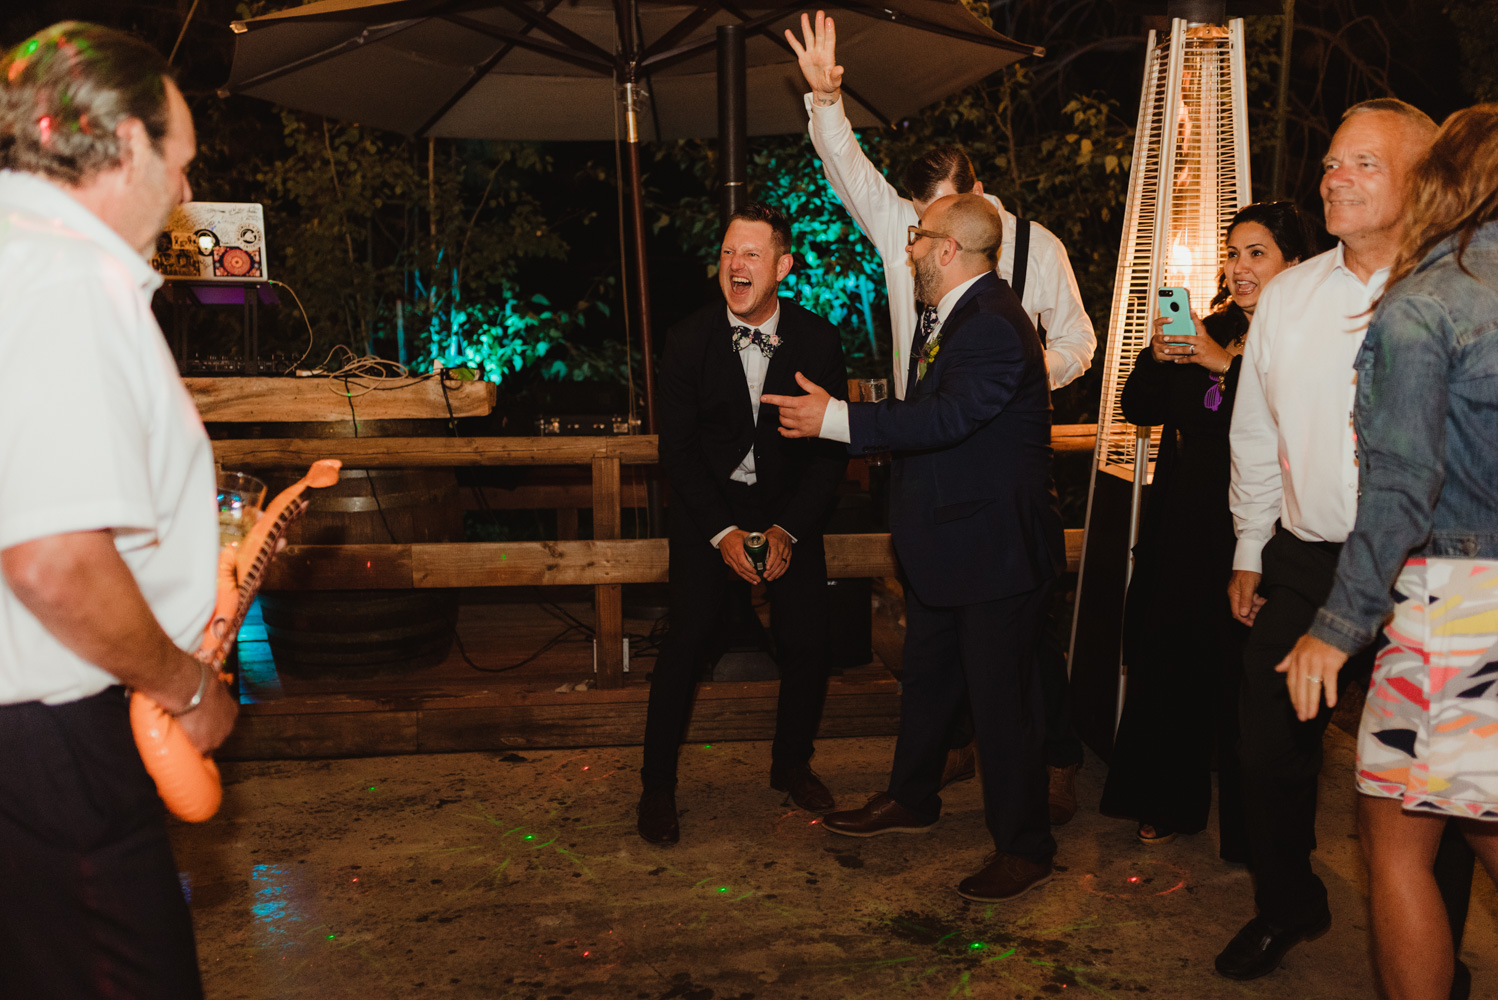 Twenty Mile House Wedding Photographer, photo of groom dancing